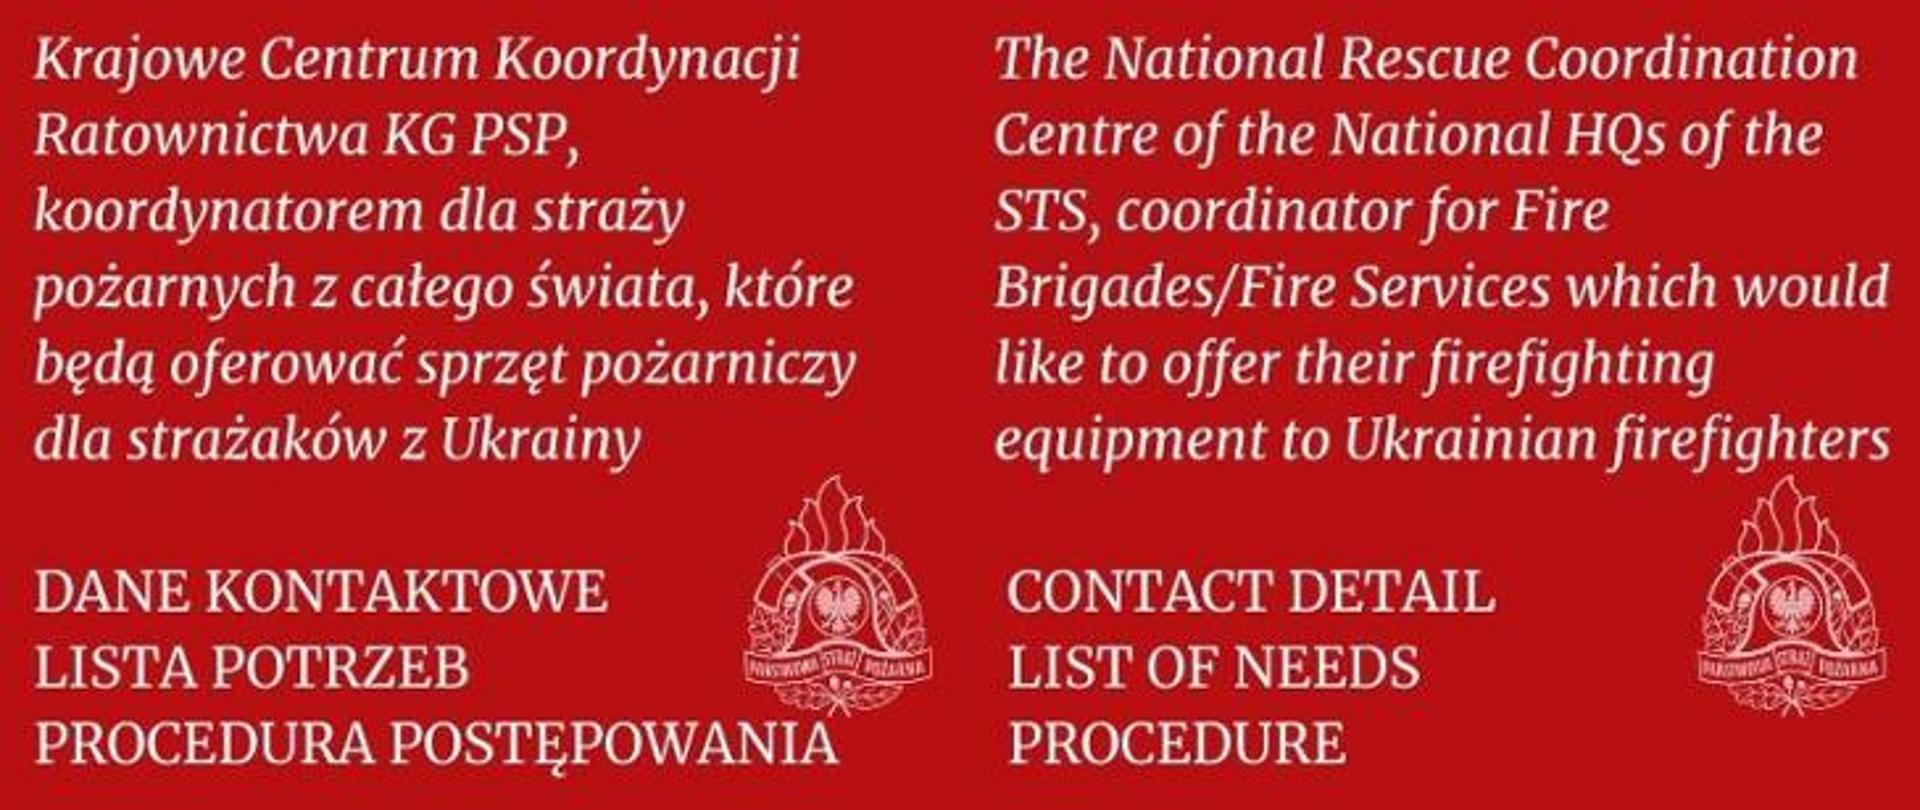 Czerwona grafika a na niej po lewej stronie białe napisy: "Krajowe Centrum Koordynacji Ratownictwa KG PSP, koordynatorem dla straży pożarnych z całego świata, które będą oferować sprzęt pożarniczy dla strażaków z Ukrainy. DANE KONTAKTOWE, LISTA POTRZEB, PROCEDURA POSTĘPOWANIA". Po prawej stronie ten sam napis ale w języku angielskim